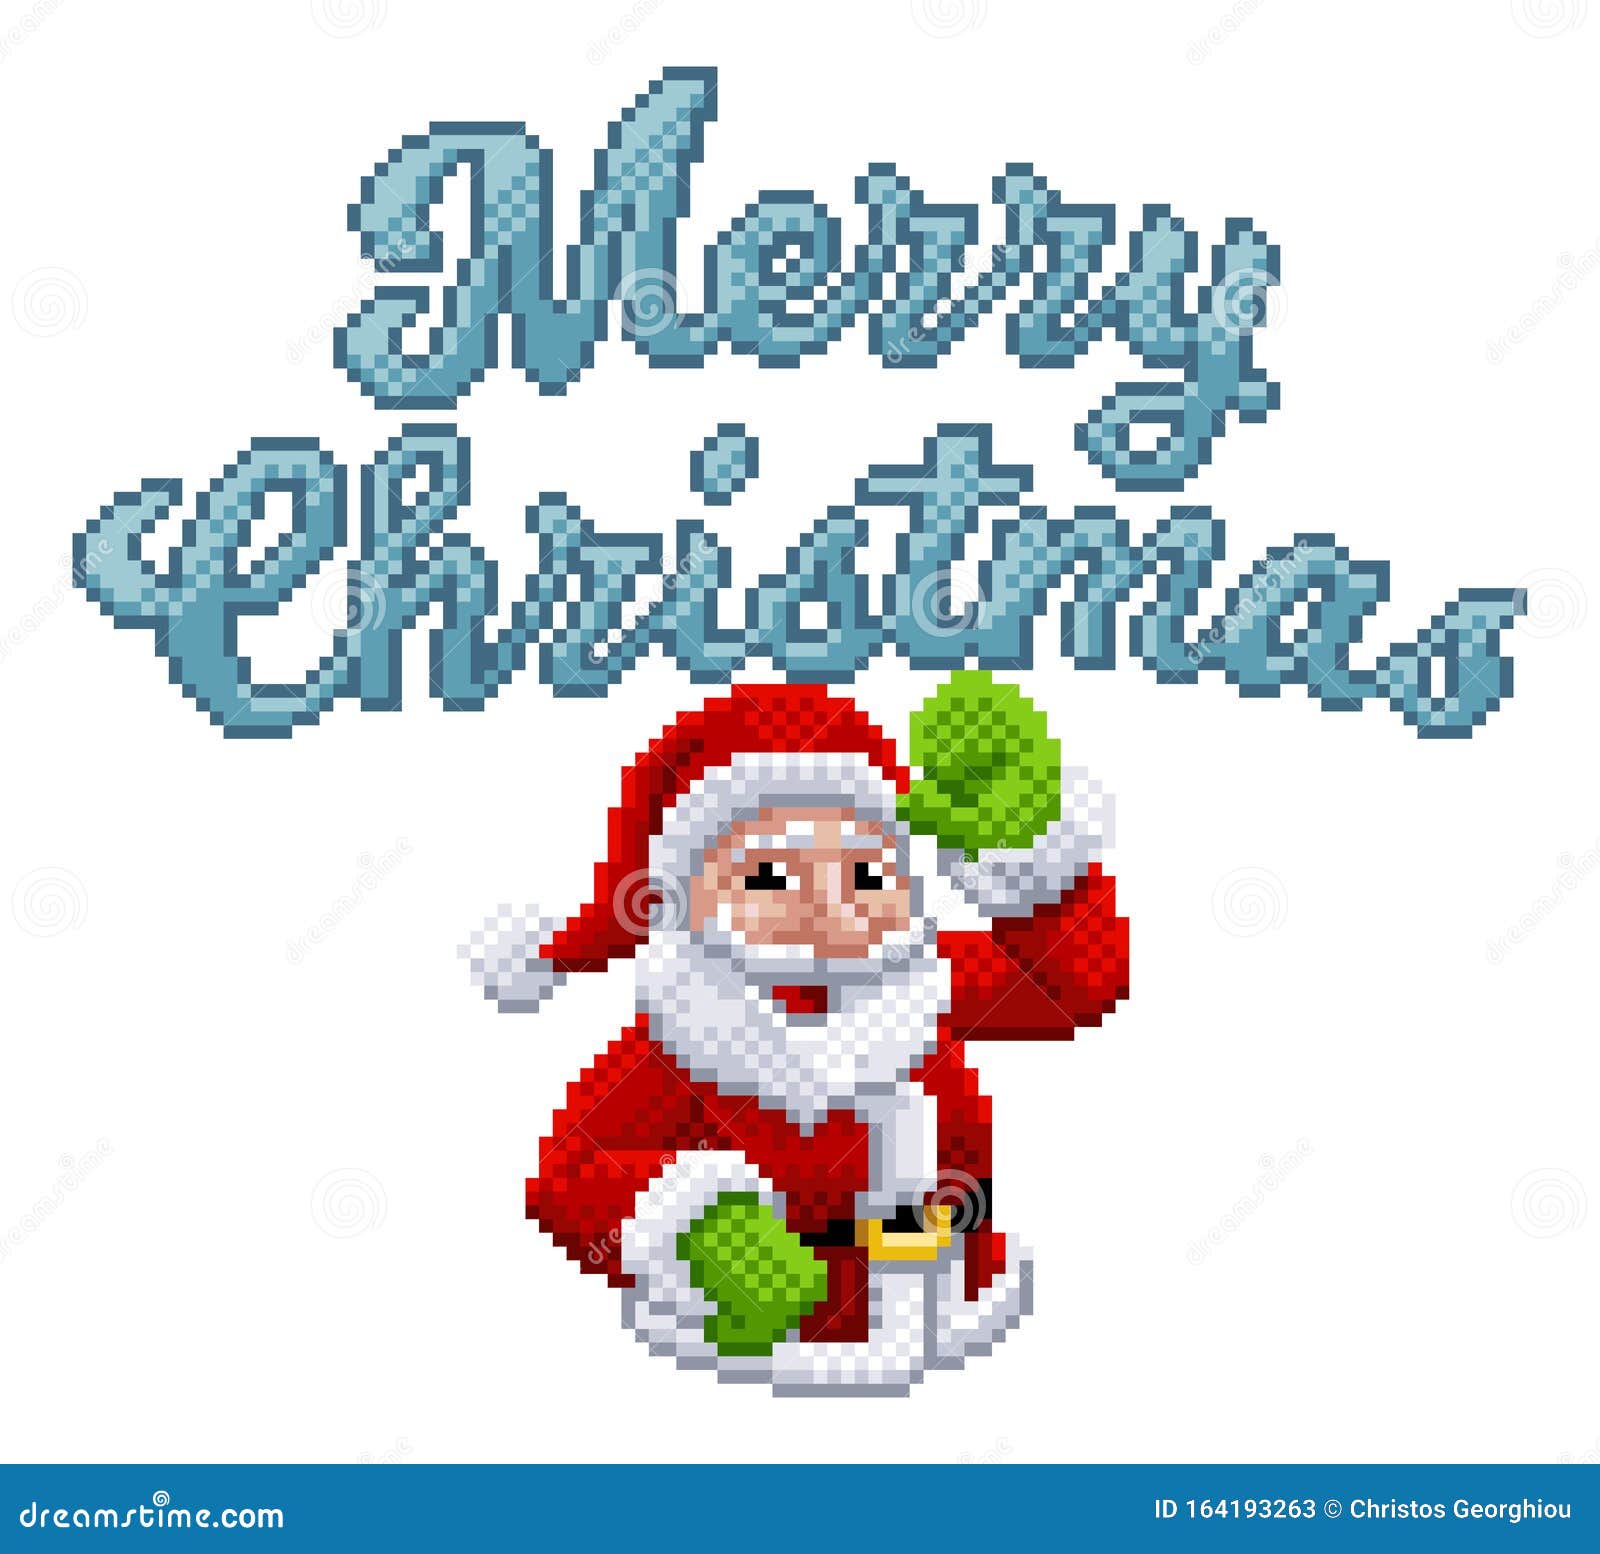 Feliz Natal, Que o Papai Noel chegue com muitos games, filmes e cursos  SAGA aí na sua casa. Desejamos um Feliz Natal a todos! #EscolaSAGA #SAGA  #ArteDigital #Games